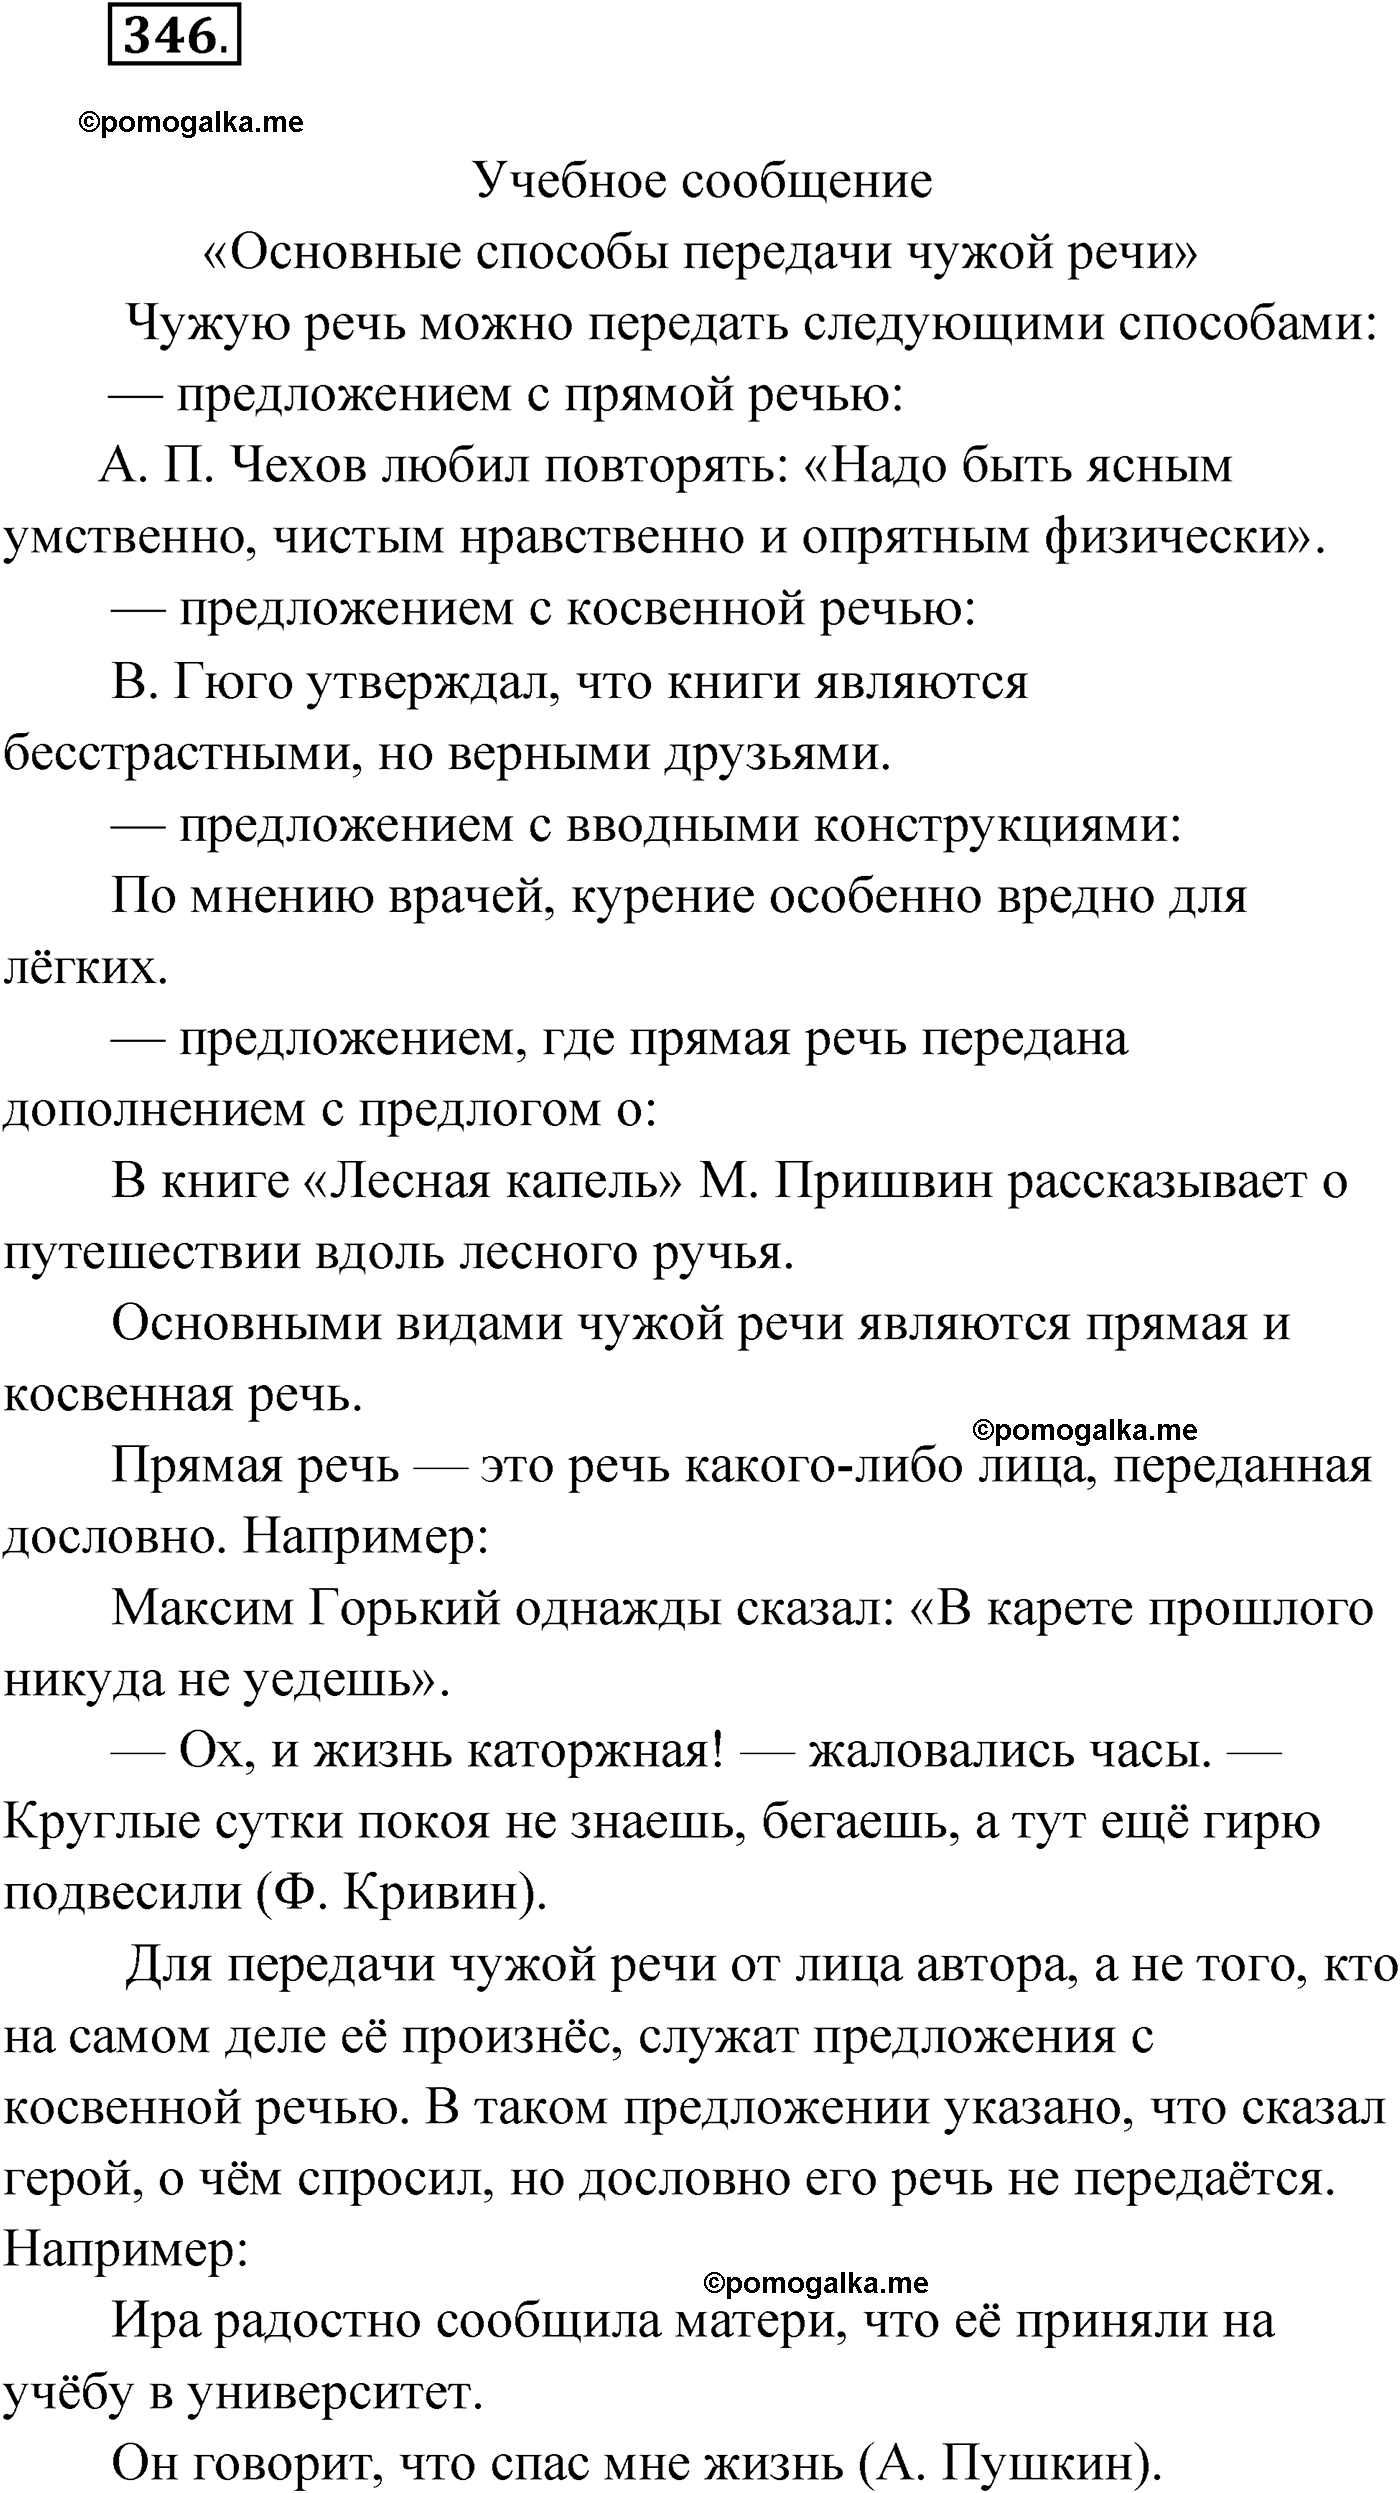 упражнение №346 русский язык 9 класс Мурина 2019 год